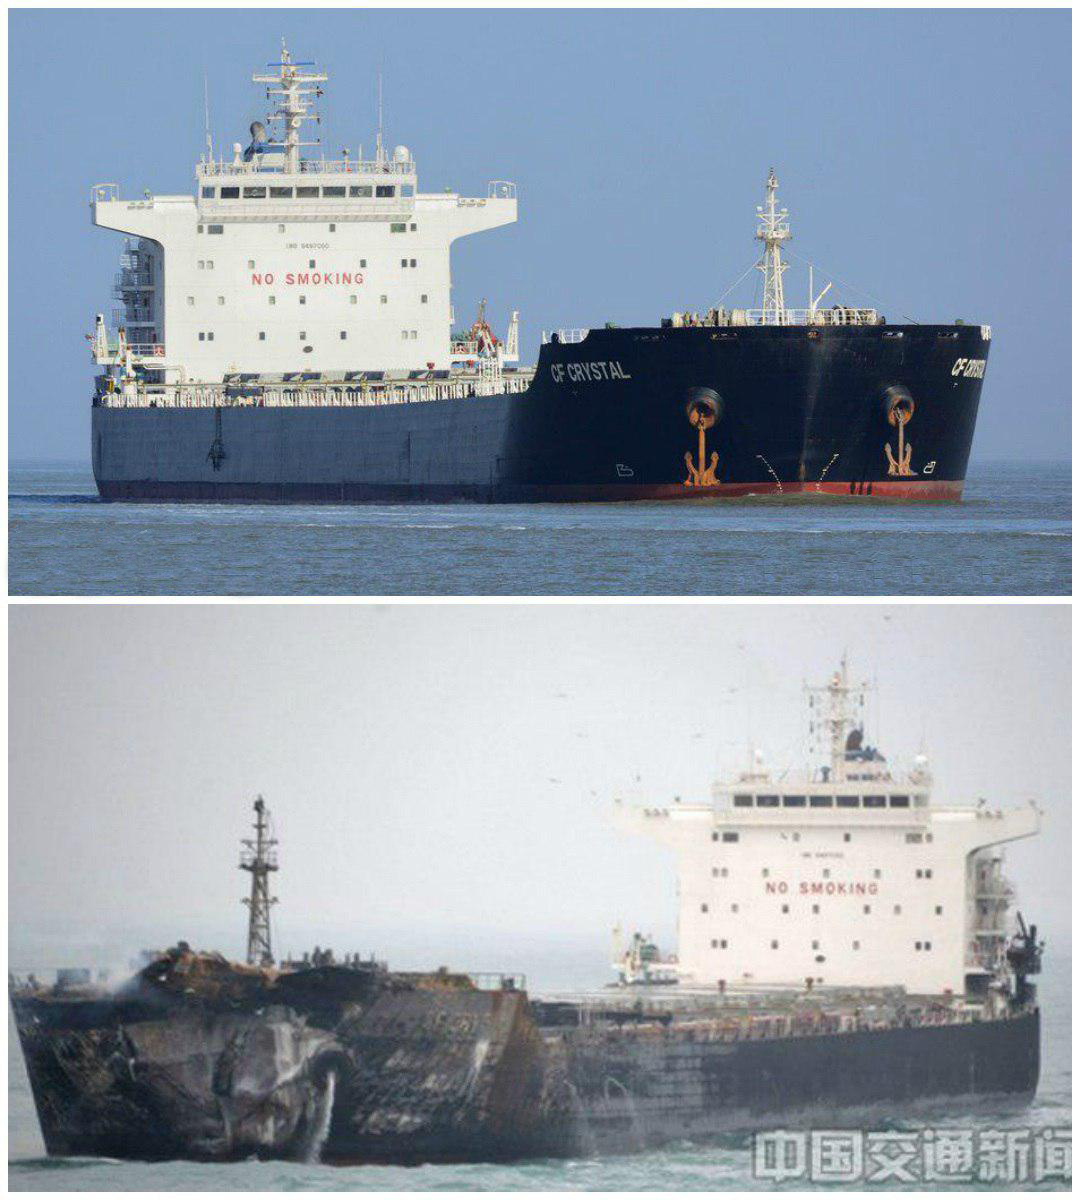 کشتی باری چینی که به نفتکش سانچی برخورد کرده، قبل و بعد از حادثه +عکس